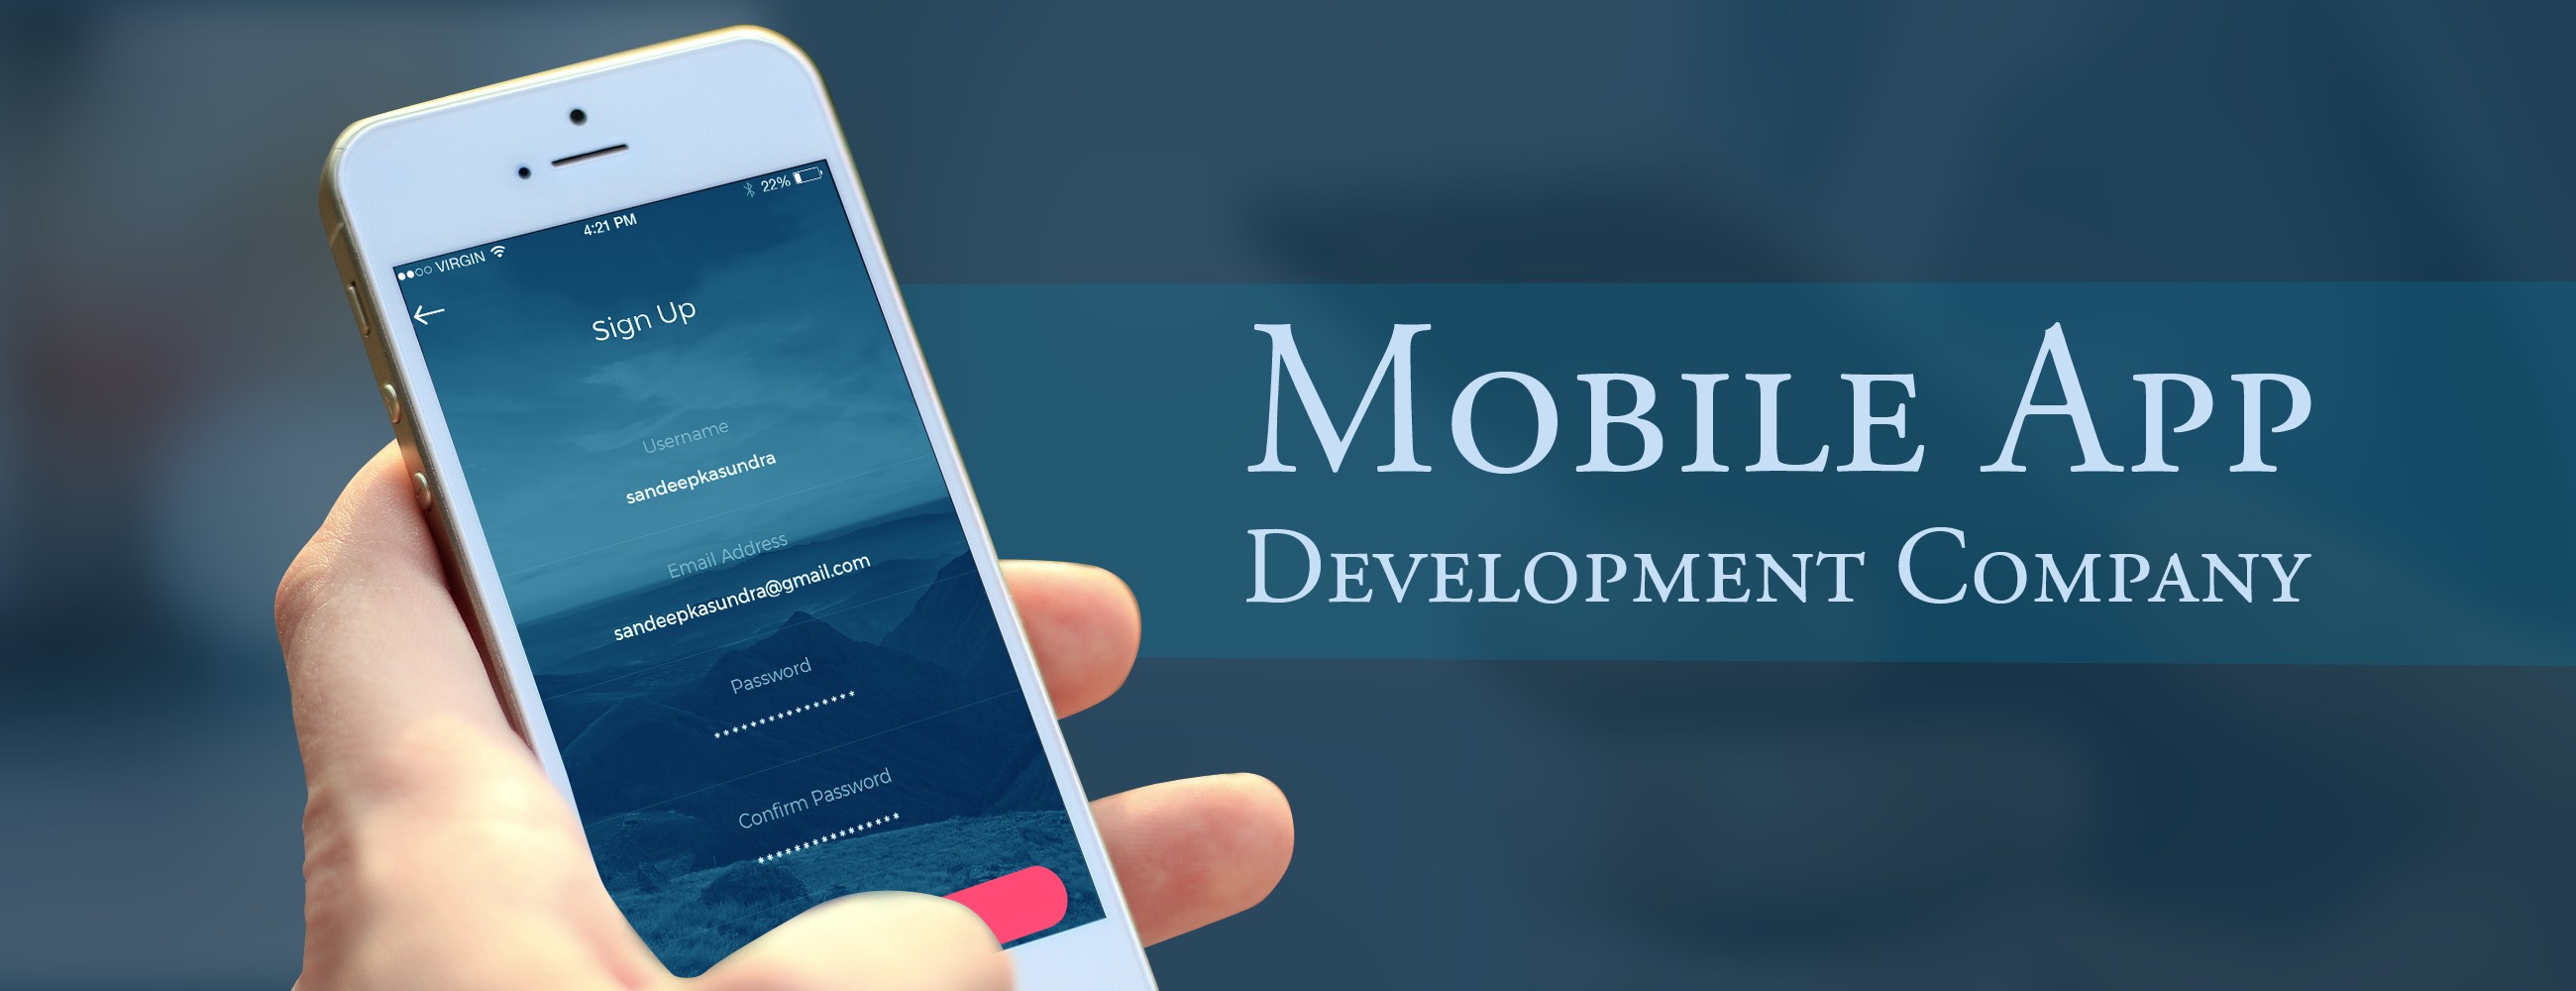  Mobile app Development Company in Saudi Arabia